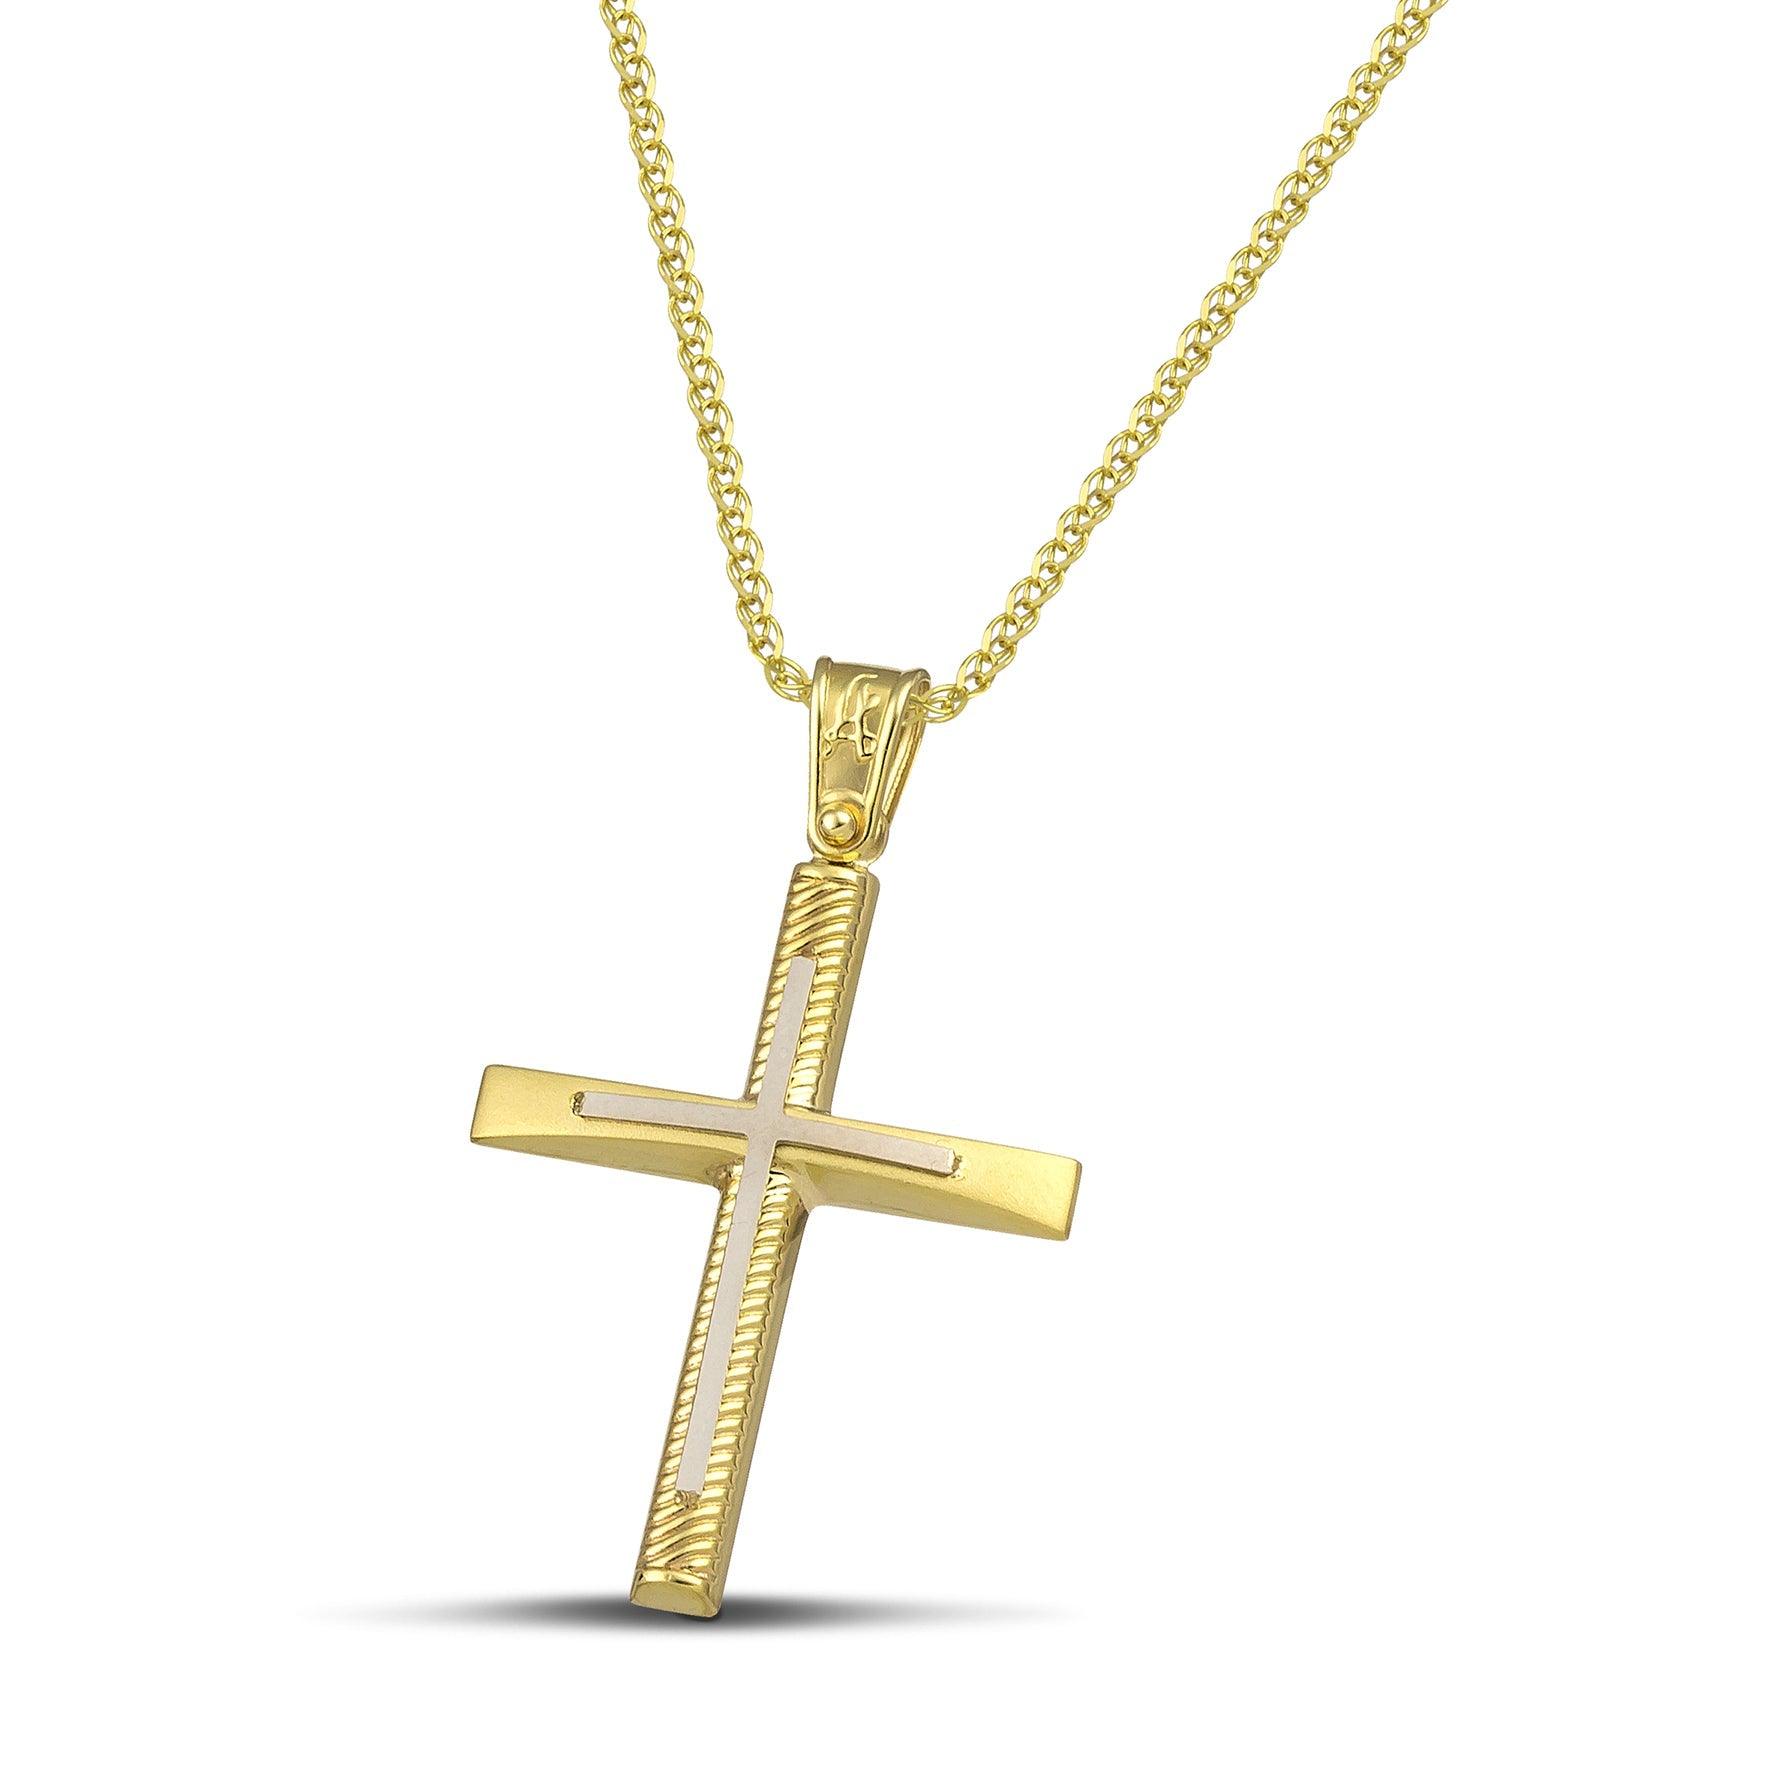 Σταυρός βάπτισης χρυσός Κ14 για γυναίκα. Διαθέτει σκαλιστά σχέδια και λευκόχρυσο σταυρό, με πλεκτή αλυσίδα.